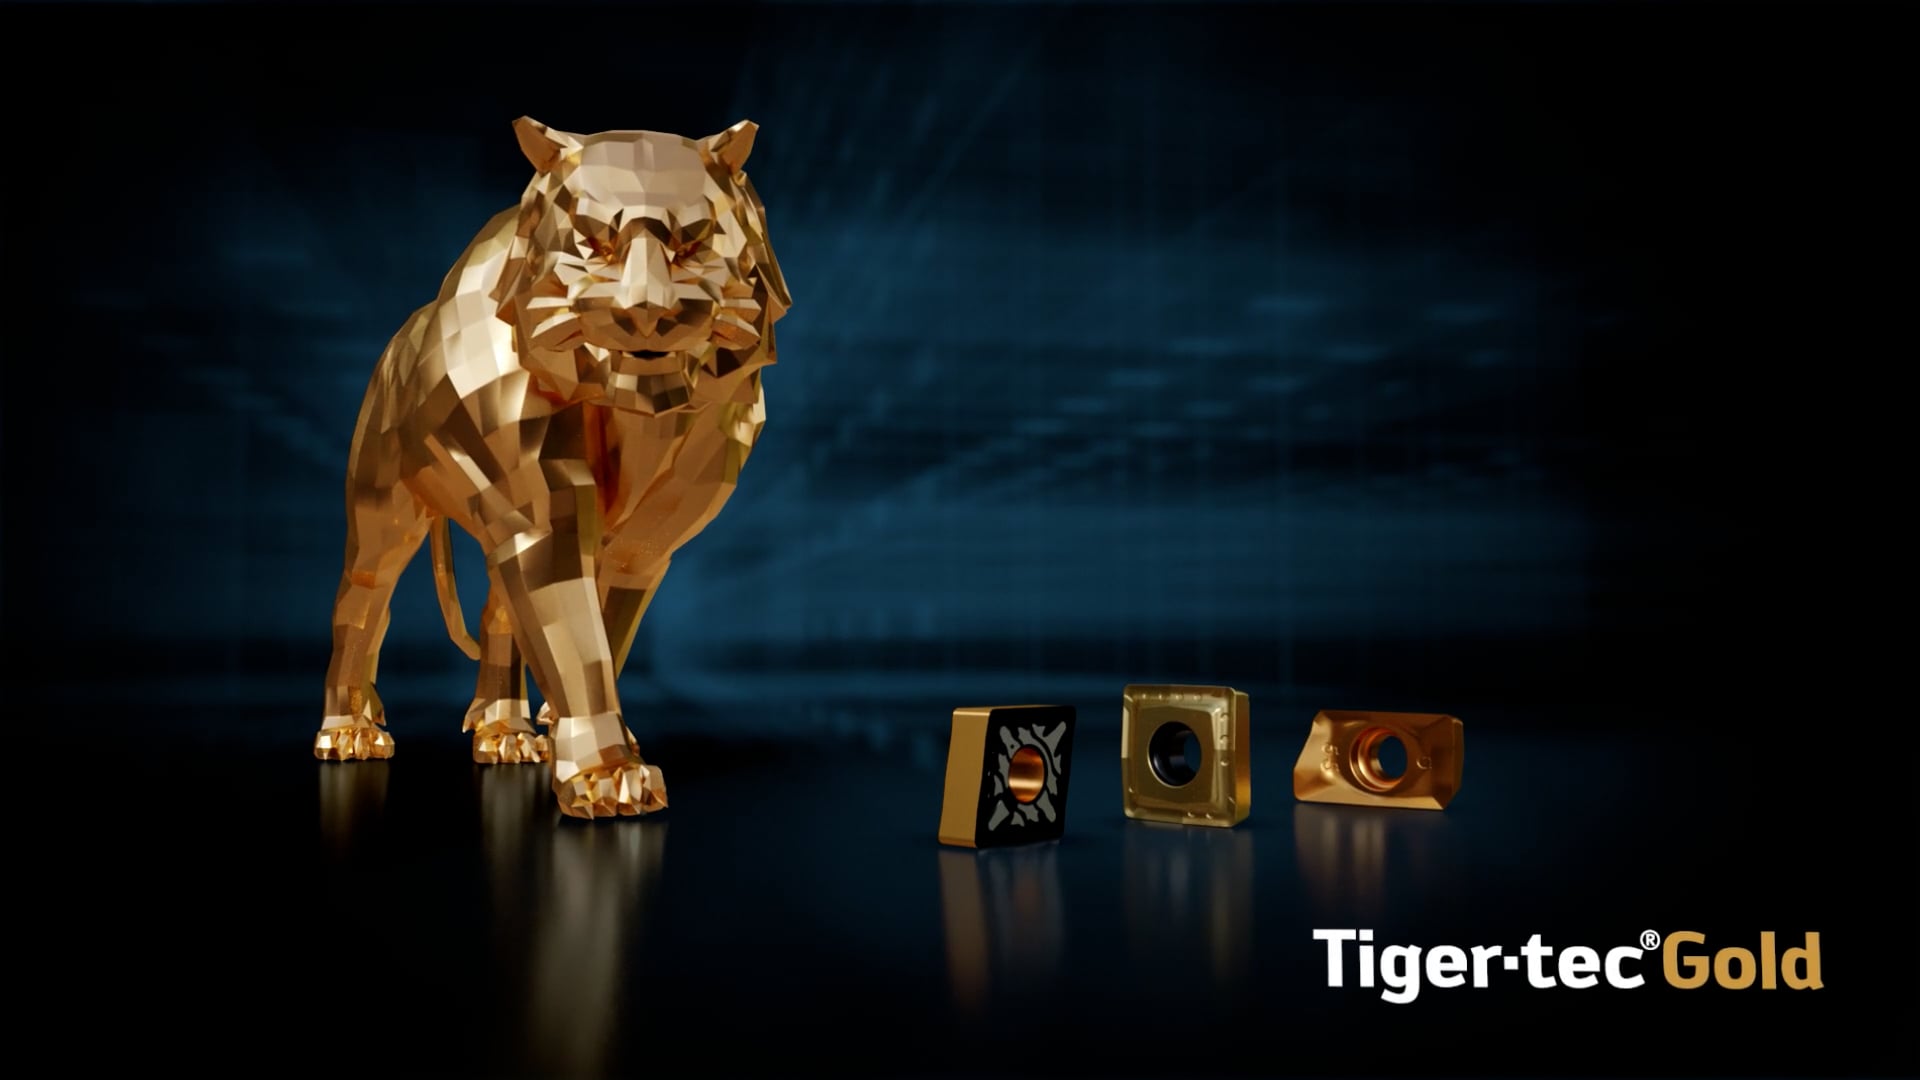 Tiger-tec Gold 2022